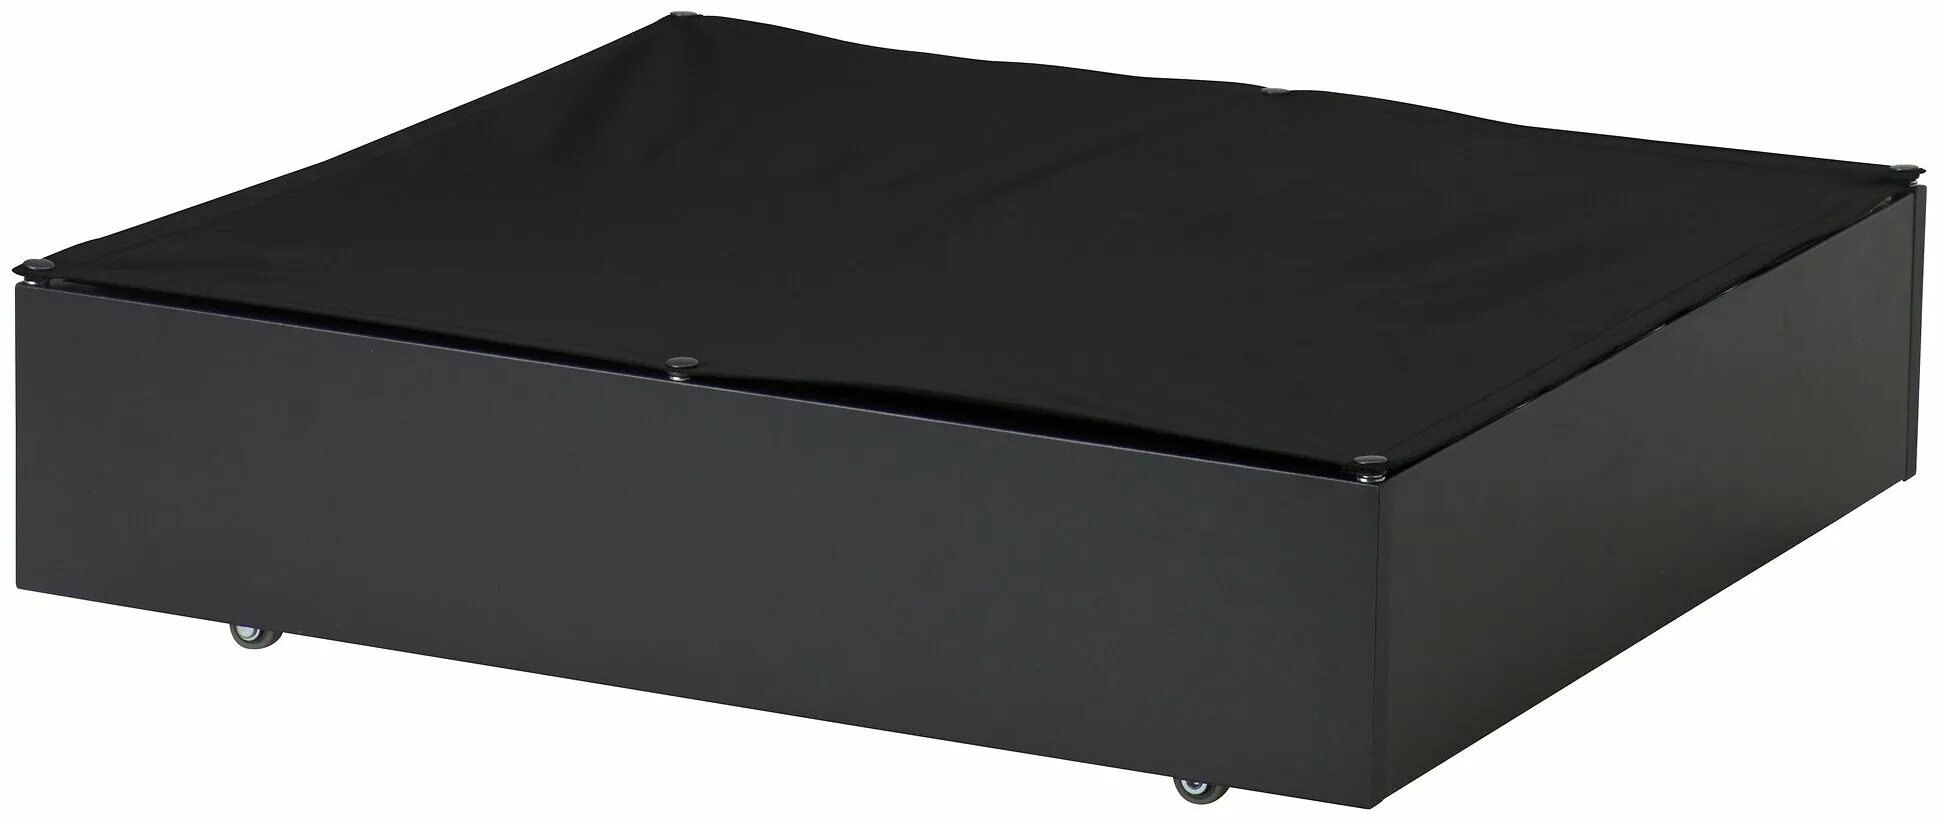 Ящик длиной 70 см. Икеа ящик Вардо 65x70 см. Vardö Вардо ящик кроватный, черный, 65x70 см. Кровать черная с ящиками. Ящик 70 см.